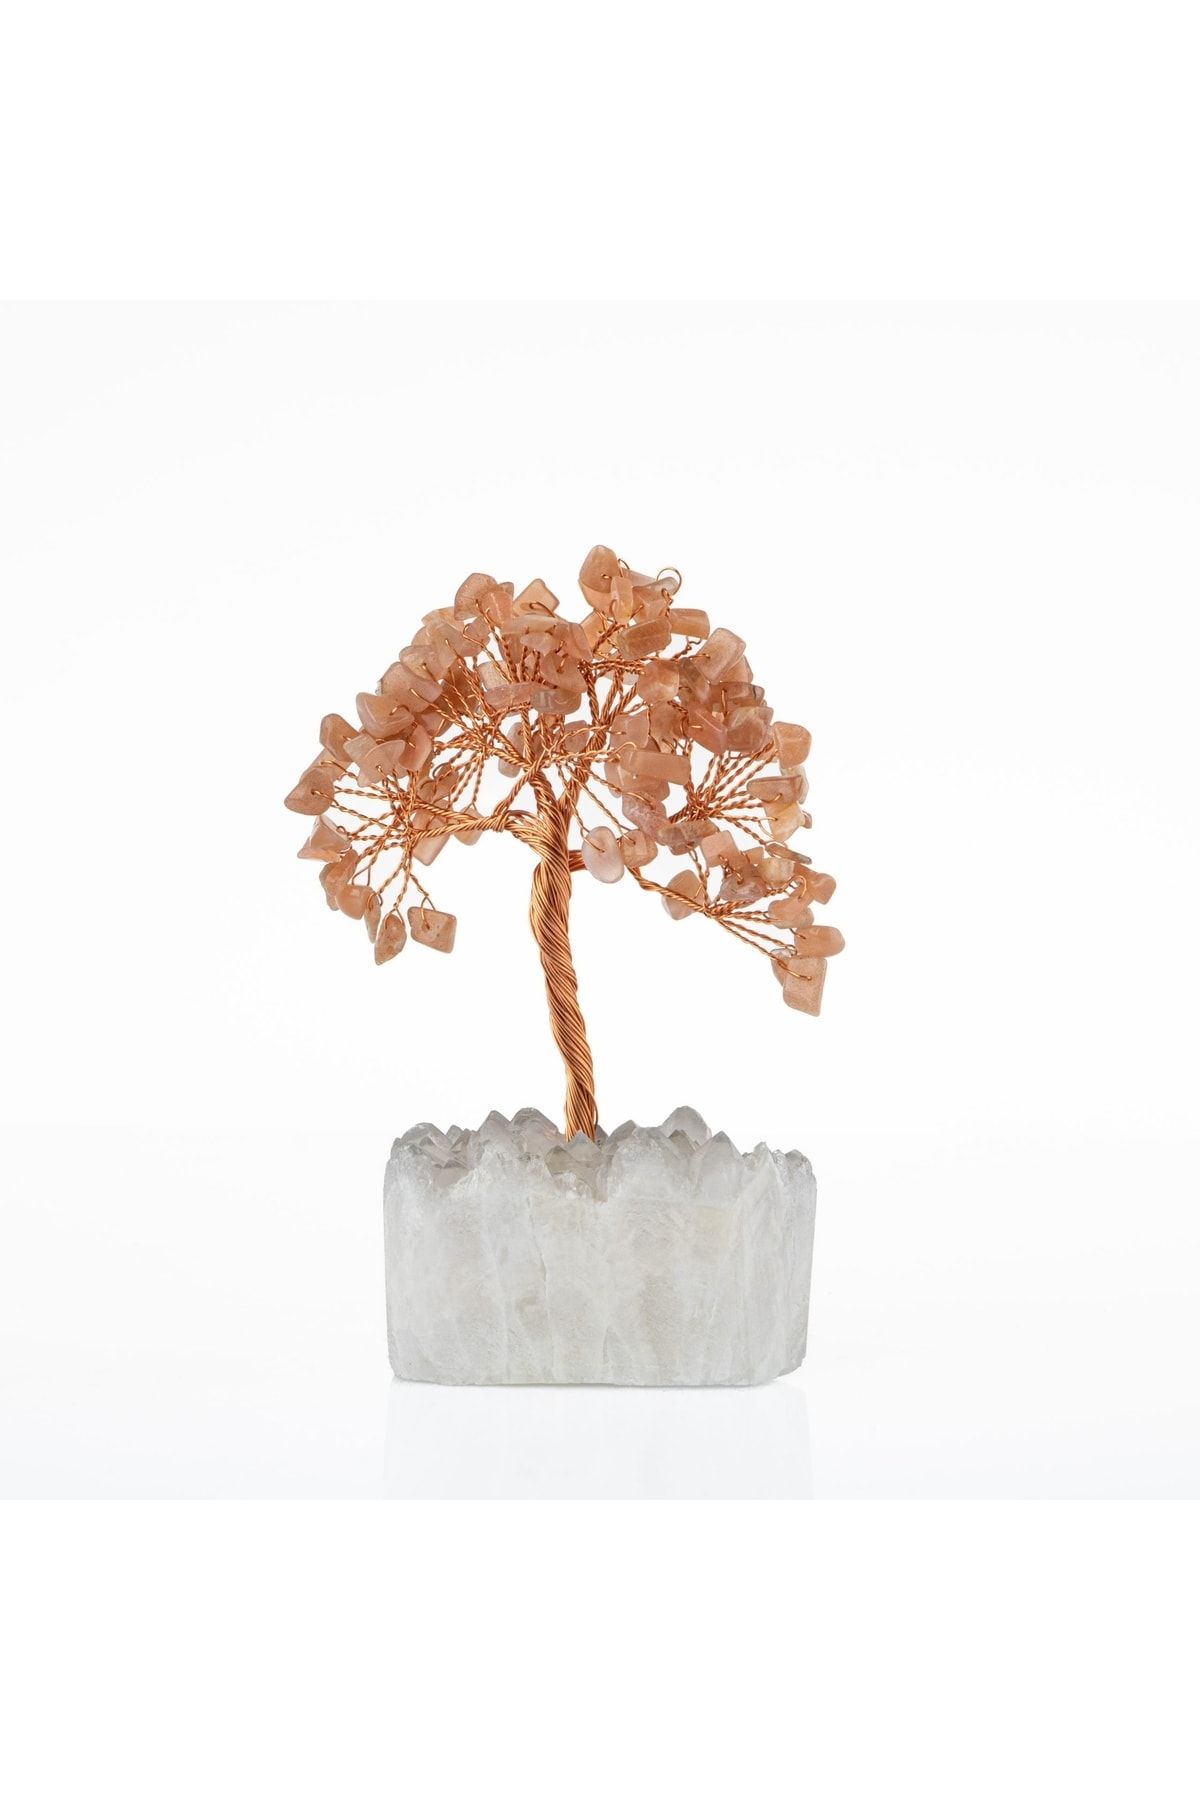 OSMANLI DOĞAL TAŞ Güneş Taşı-kristal Kuvars Doğal Taş Dekoratif Ağaç